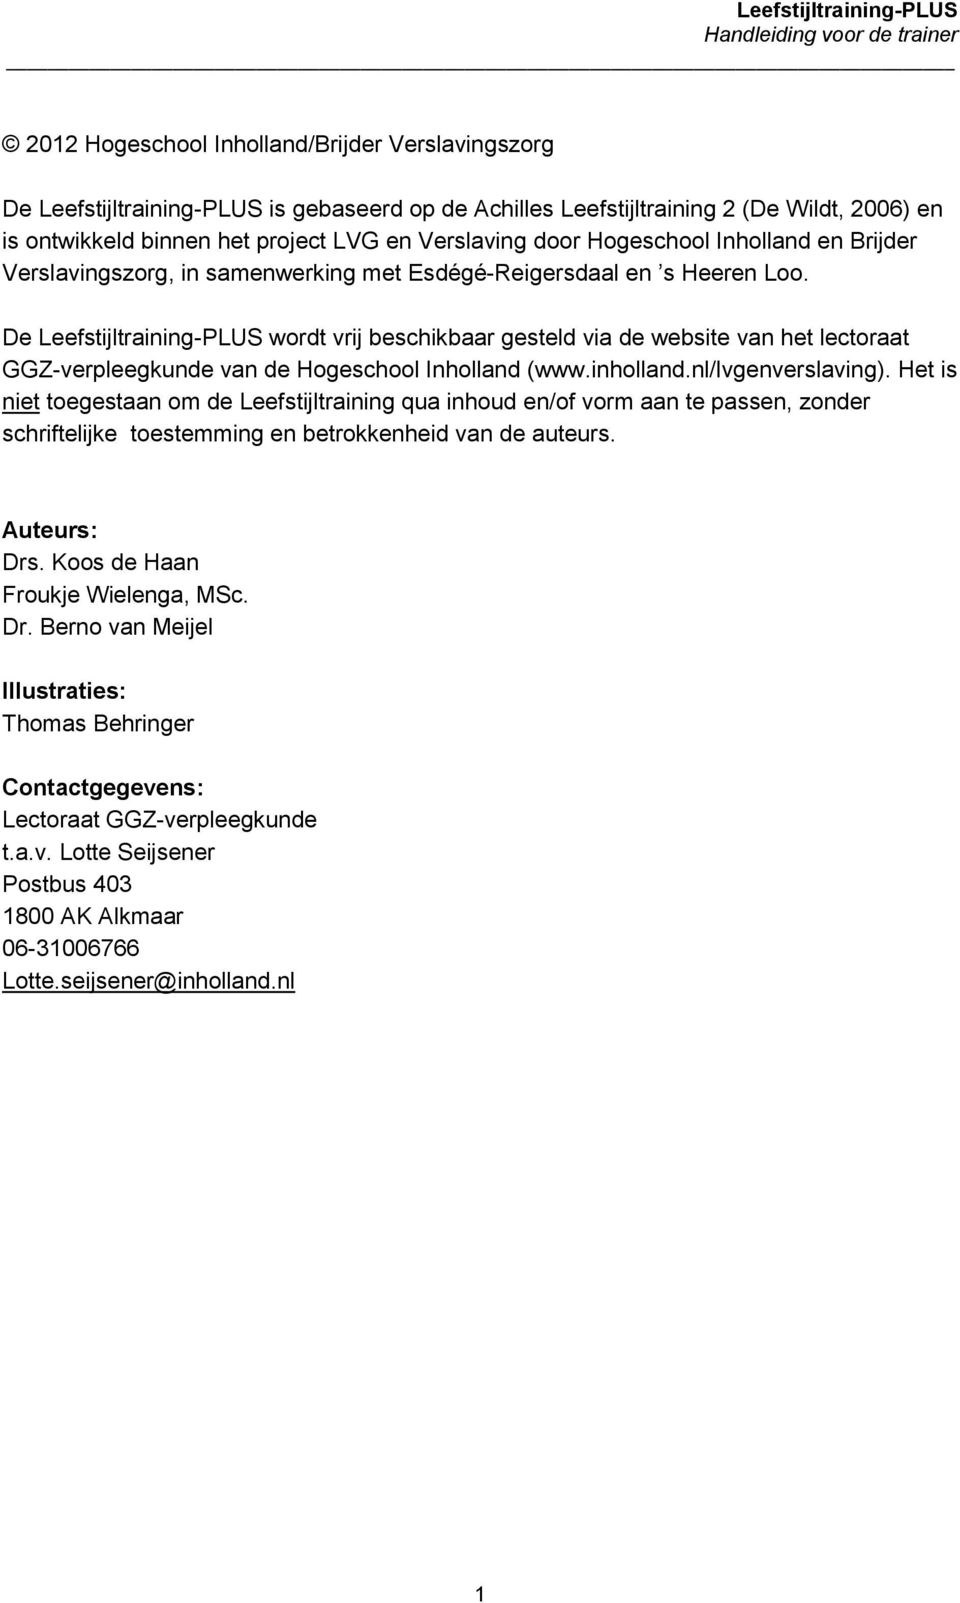 De Leefstijltraining-PLUS wordt vrij beschikbaar gesteld via de website van het lectoraat GGZ-verpleegkunde van de Hogeschool Inholland (www.inholland.nl/lvgenverslaving).